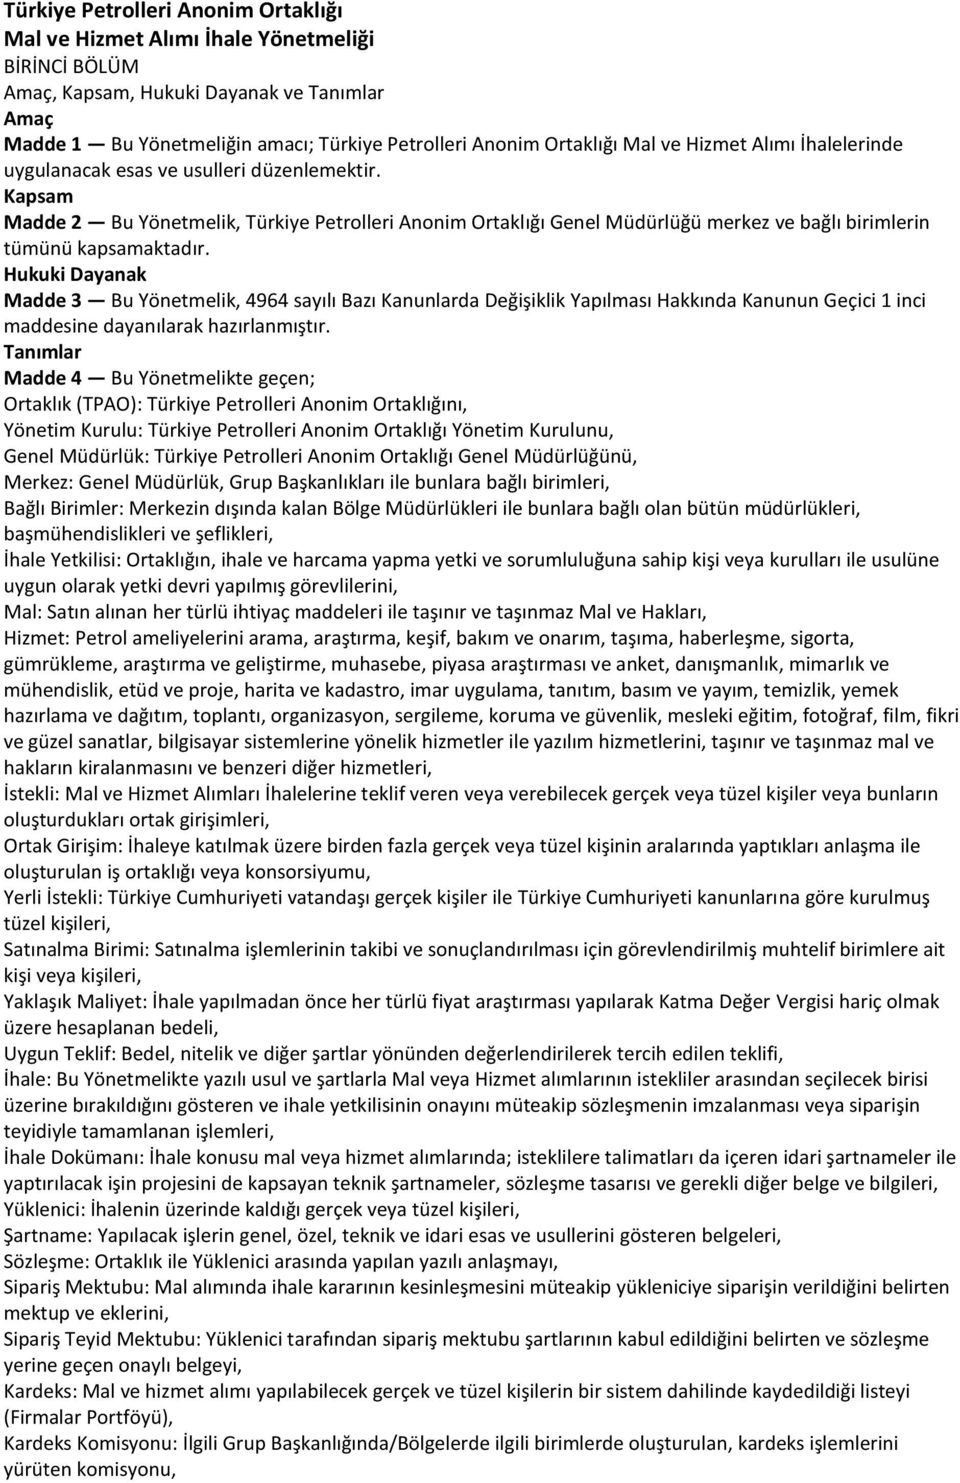 Kapsam Madde 2 Bu Yönetmelik, Türkiye Petrolleri Anonim Ortaklığı Genel Müdürlüğü merkez ve bağlı birimlerin tümünü kapsamaktadır.